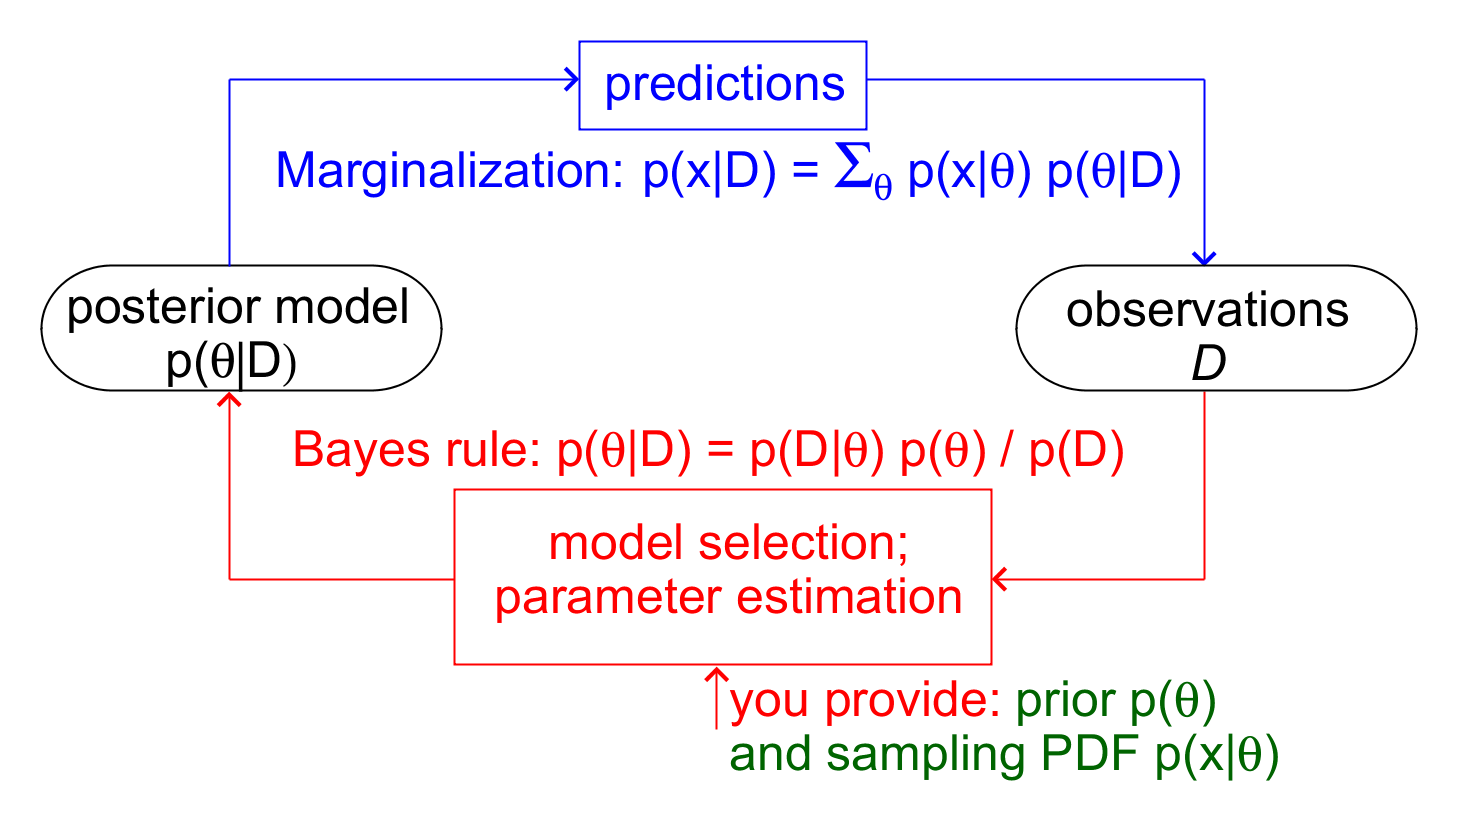 fig-Bayesian-scientific-method.png